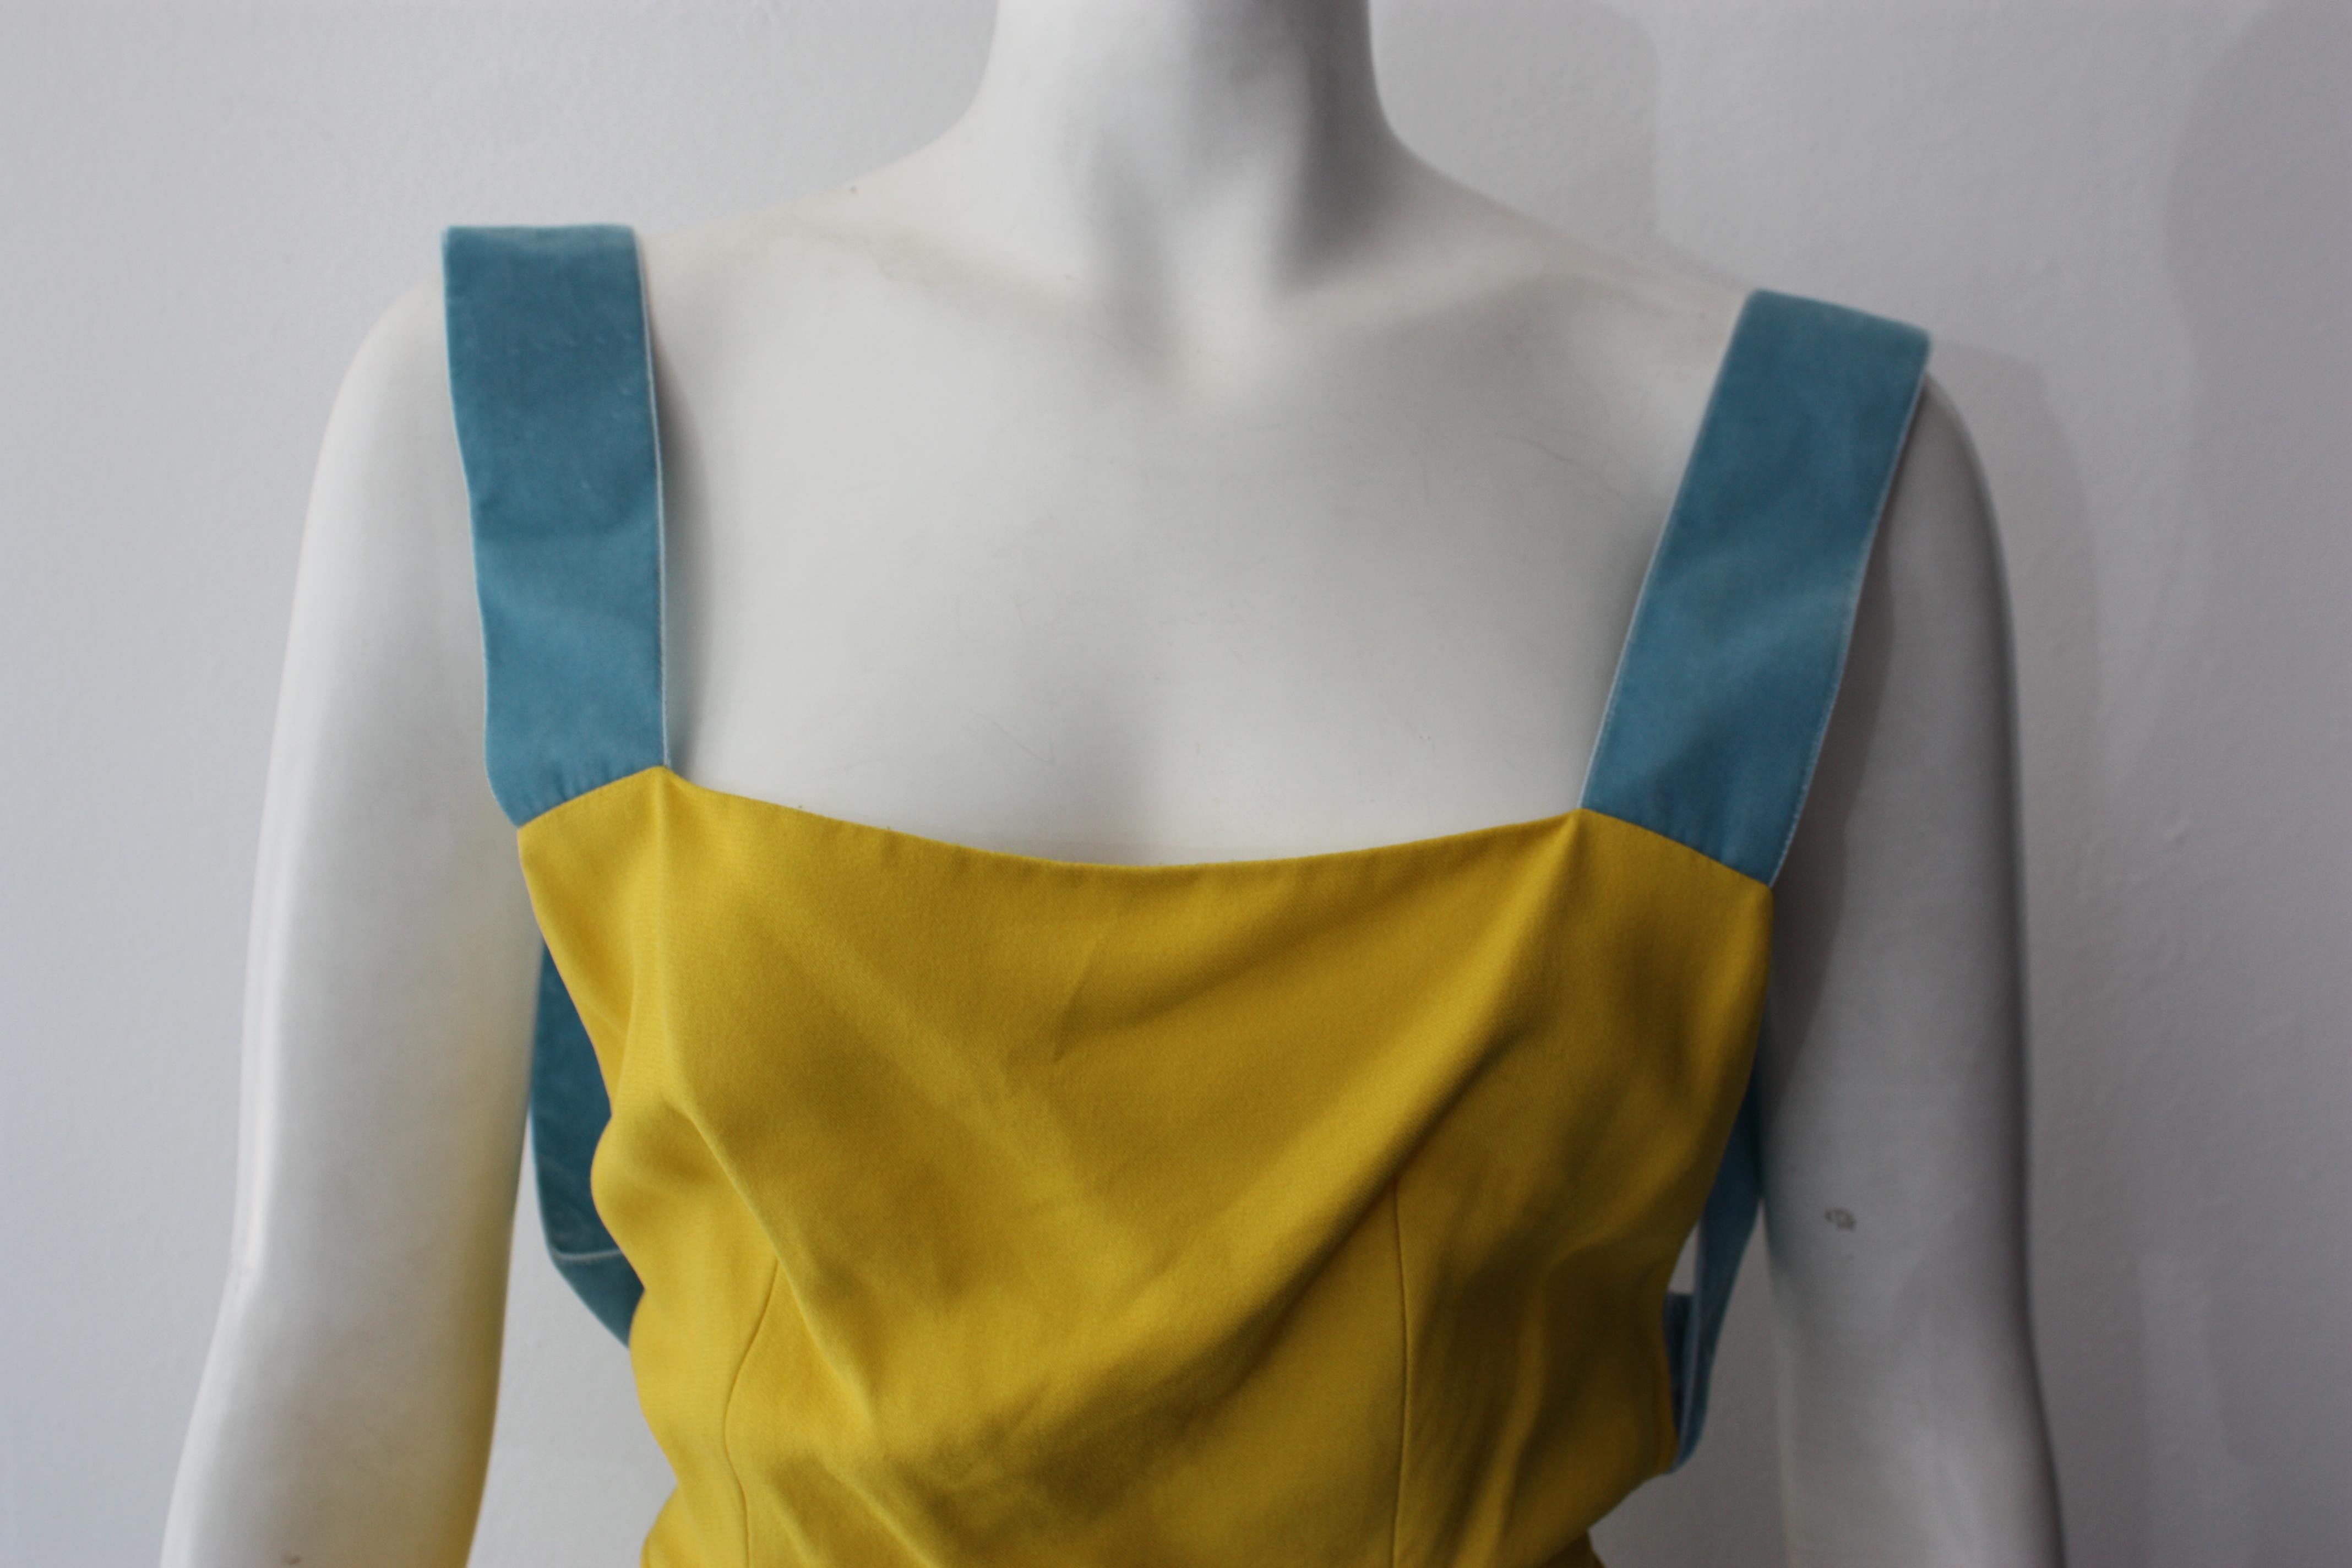 Prada Special Edition gelbes Kleid mit blauen Samtträgern. Rückenbügel. Seitlicher Reißverschluss.

Größe 36
100% Viskose